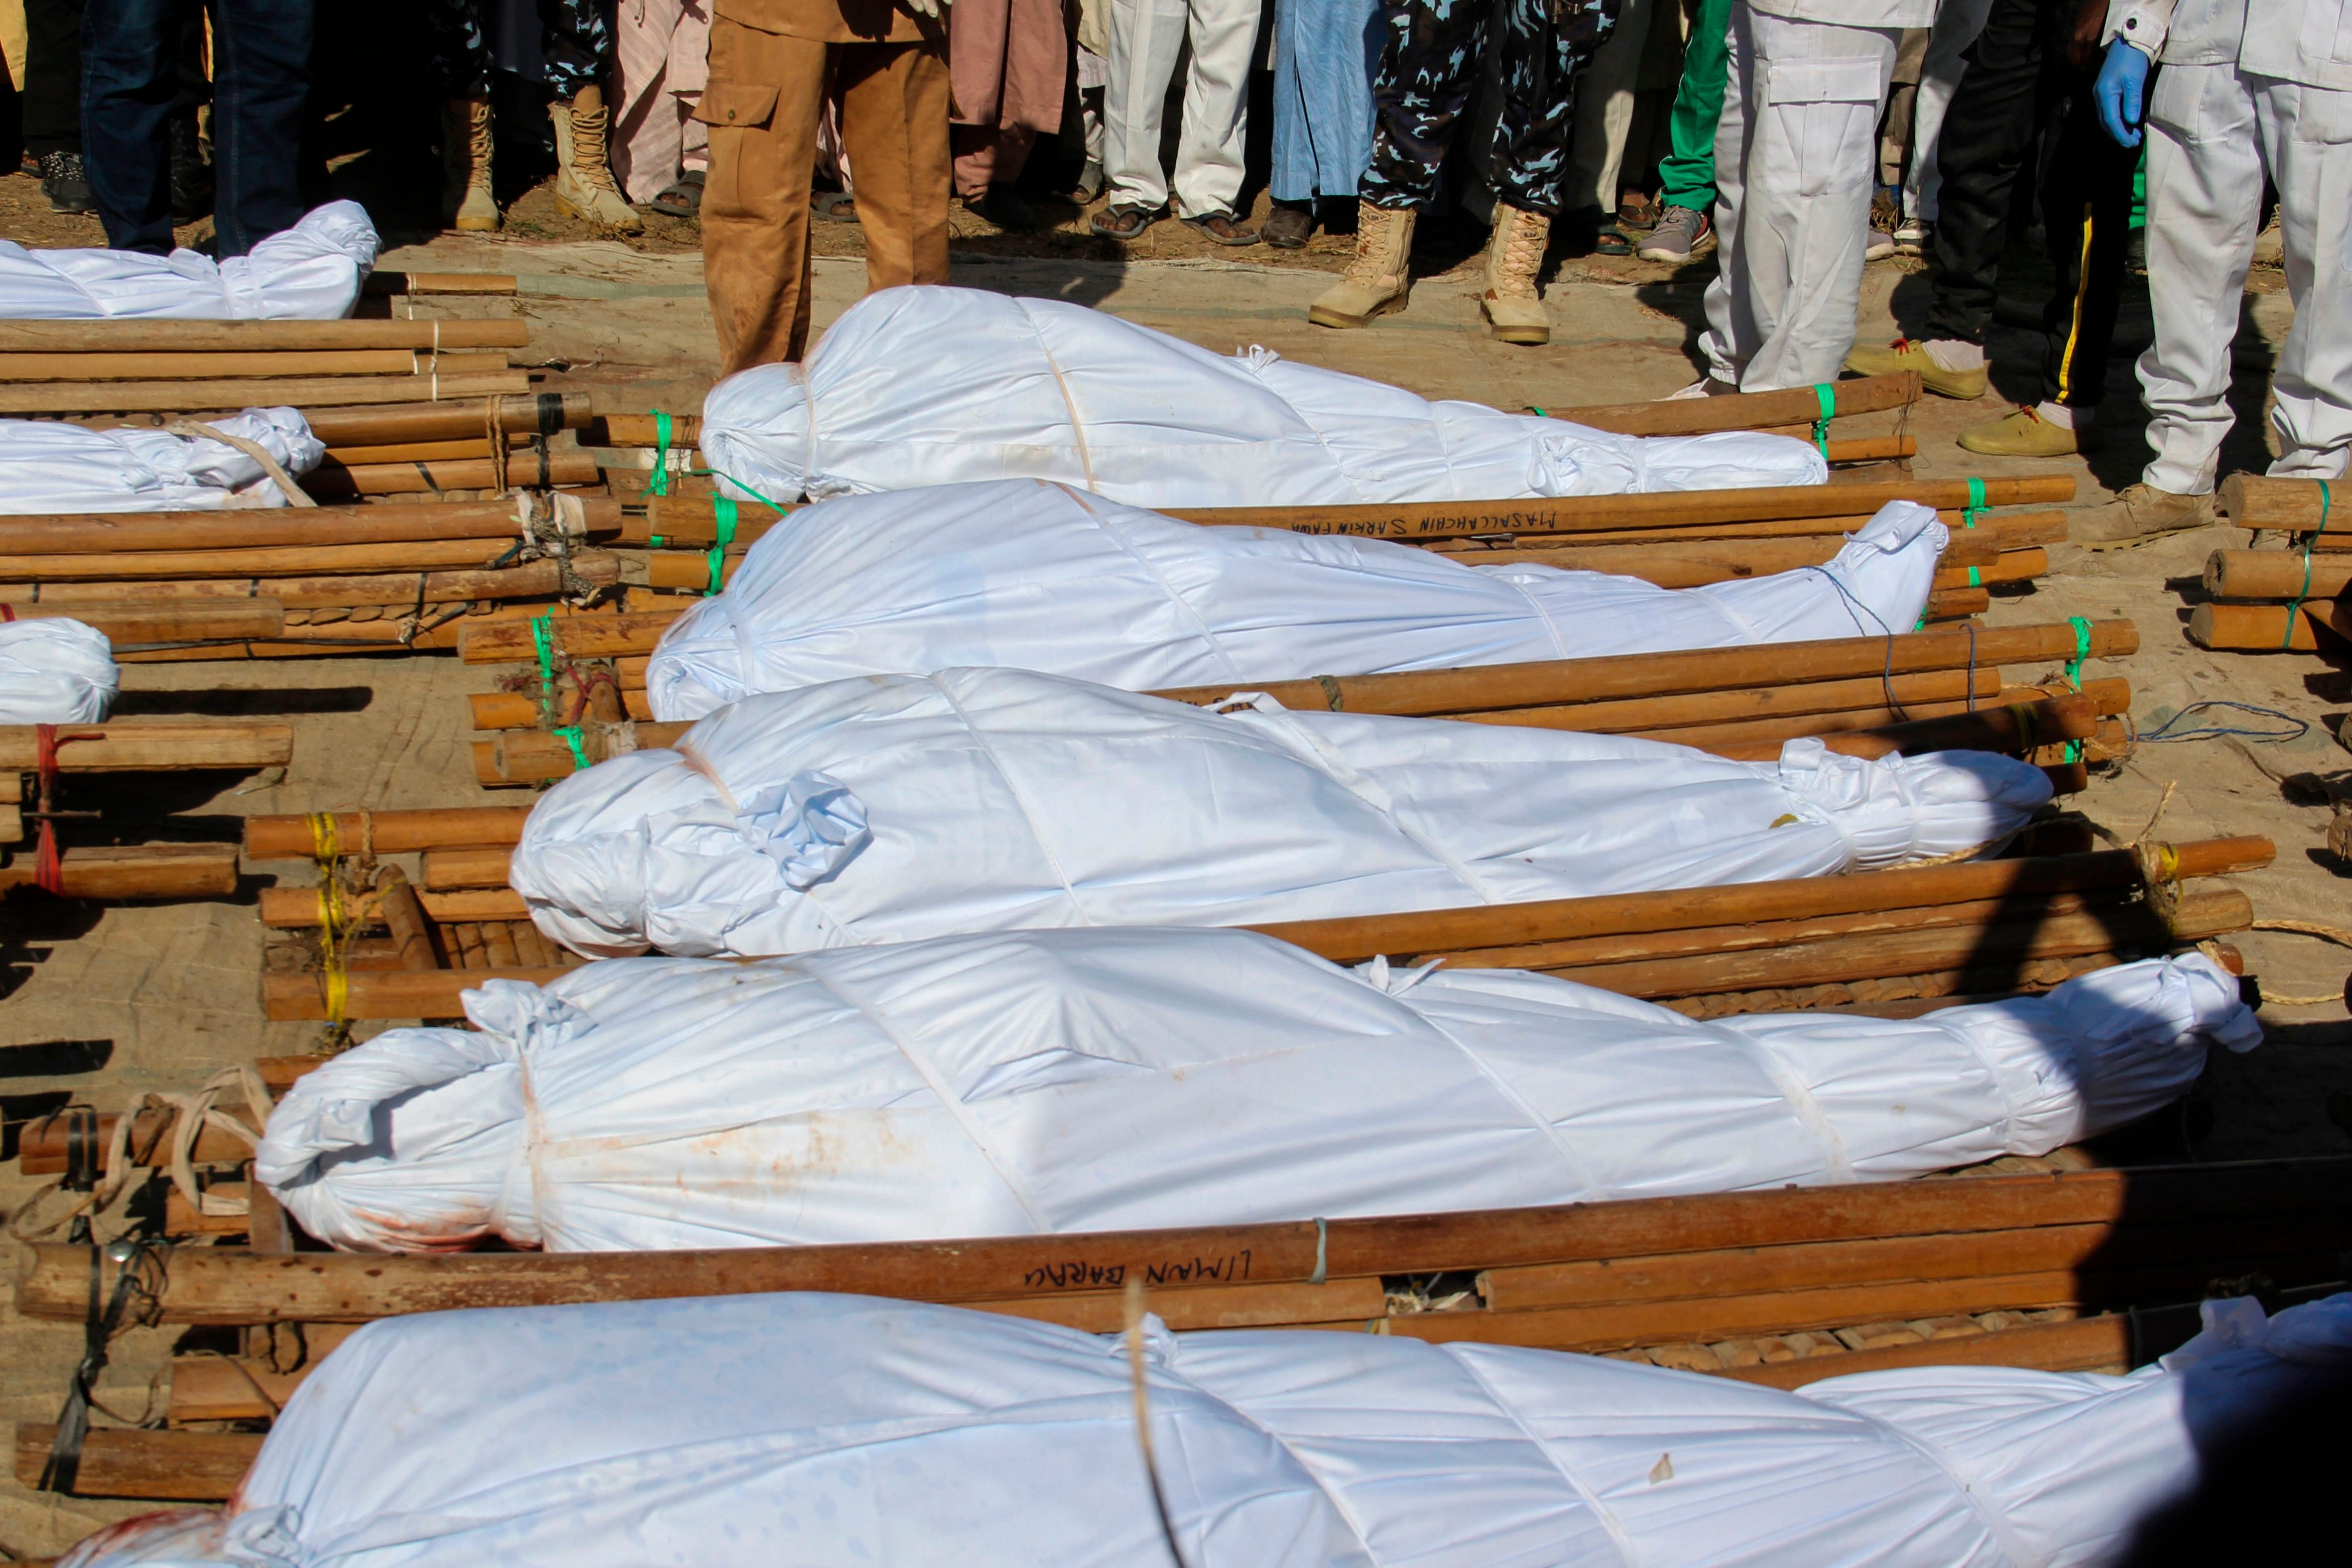 Los cuerpos de 43 trabajadores agrícolas se ven durante un funeral en Zabarmari, a unos 20 km de Maiduguri, Nigeria, el 29 de noviembre de 2020 después de que fueran asesinados por los combatientes de Boko Haram en los campos de arroz cerca de la aldea de Koshobe el 28 de noviembre de 2020 - Los asaltantes ataron a los trabajadores agrícolas y les cortaron la garganta en el pueblo de Koshobe.